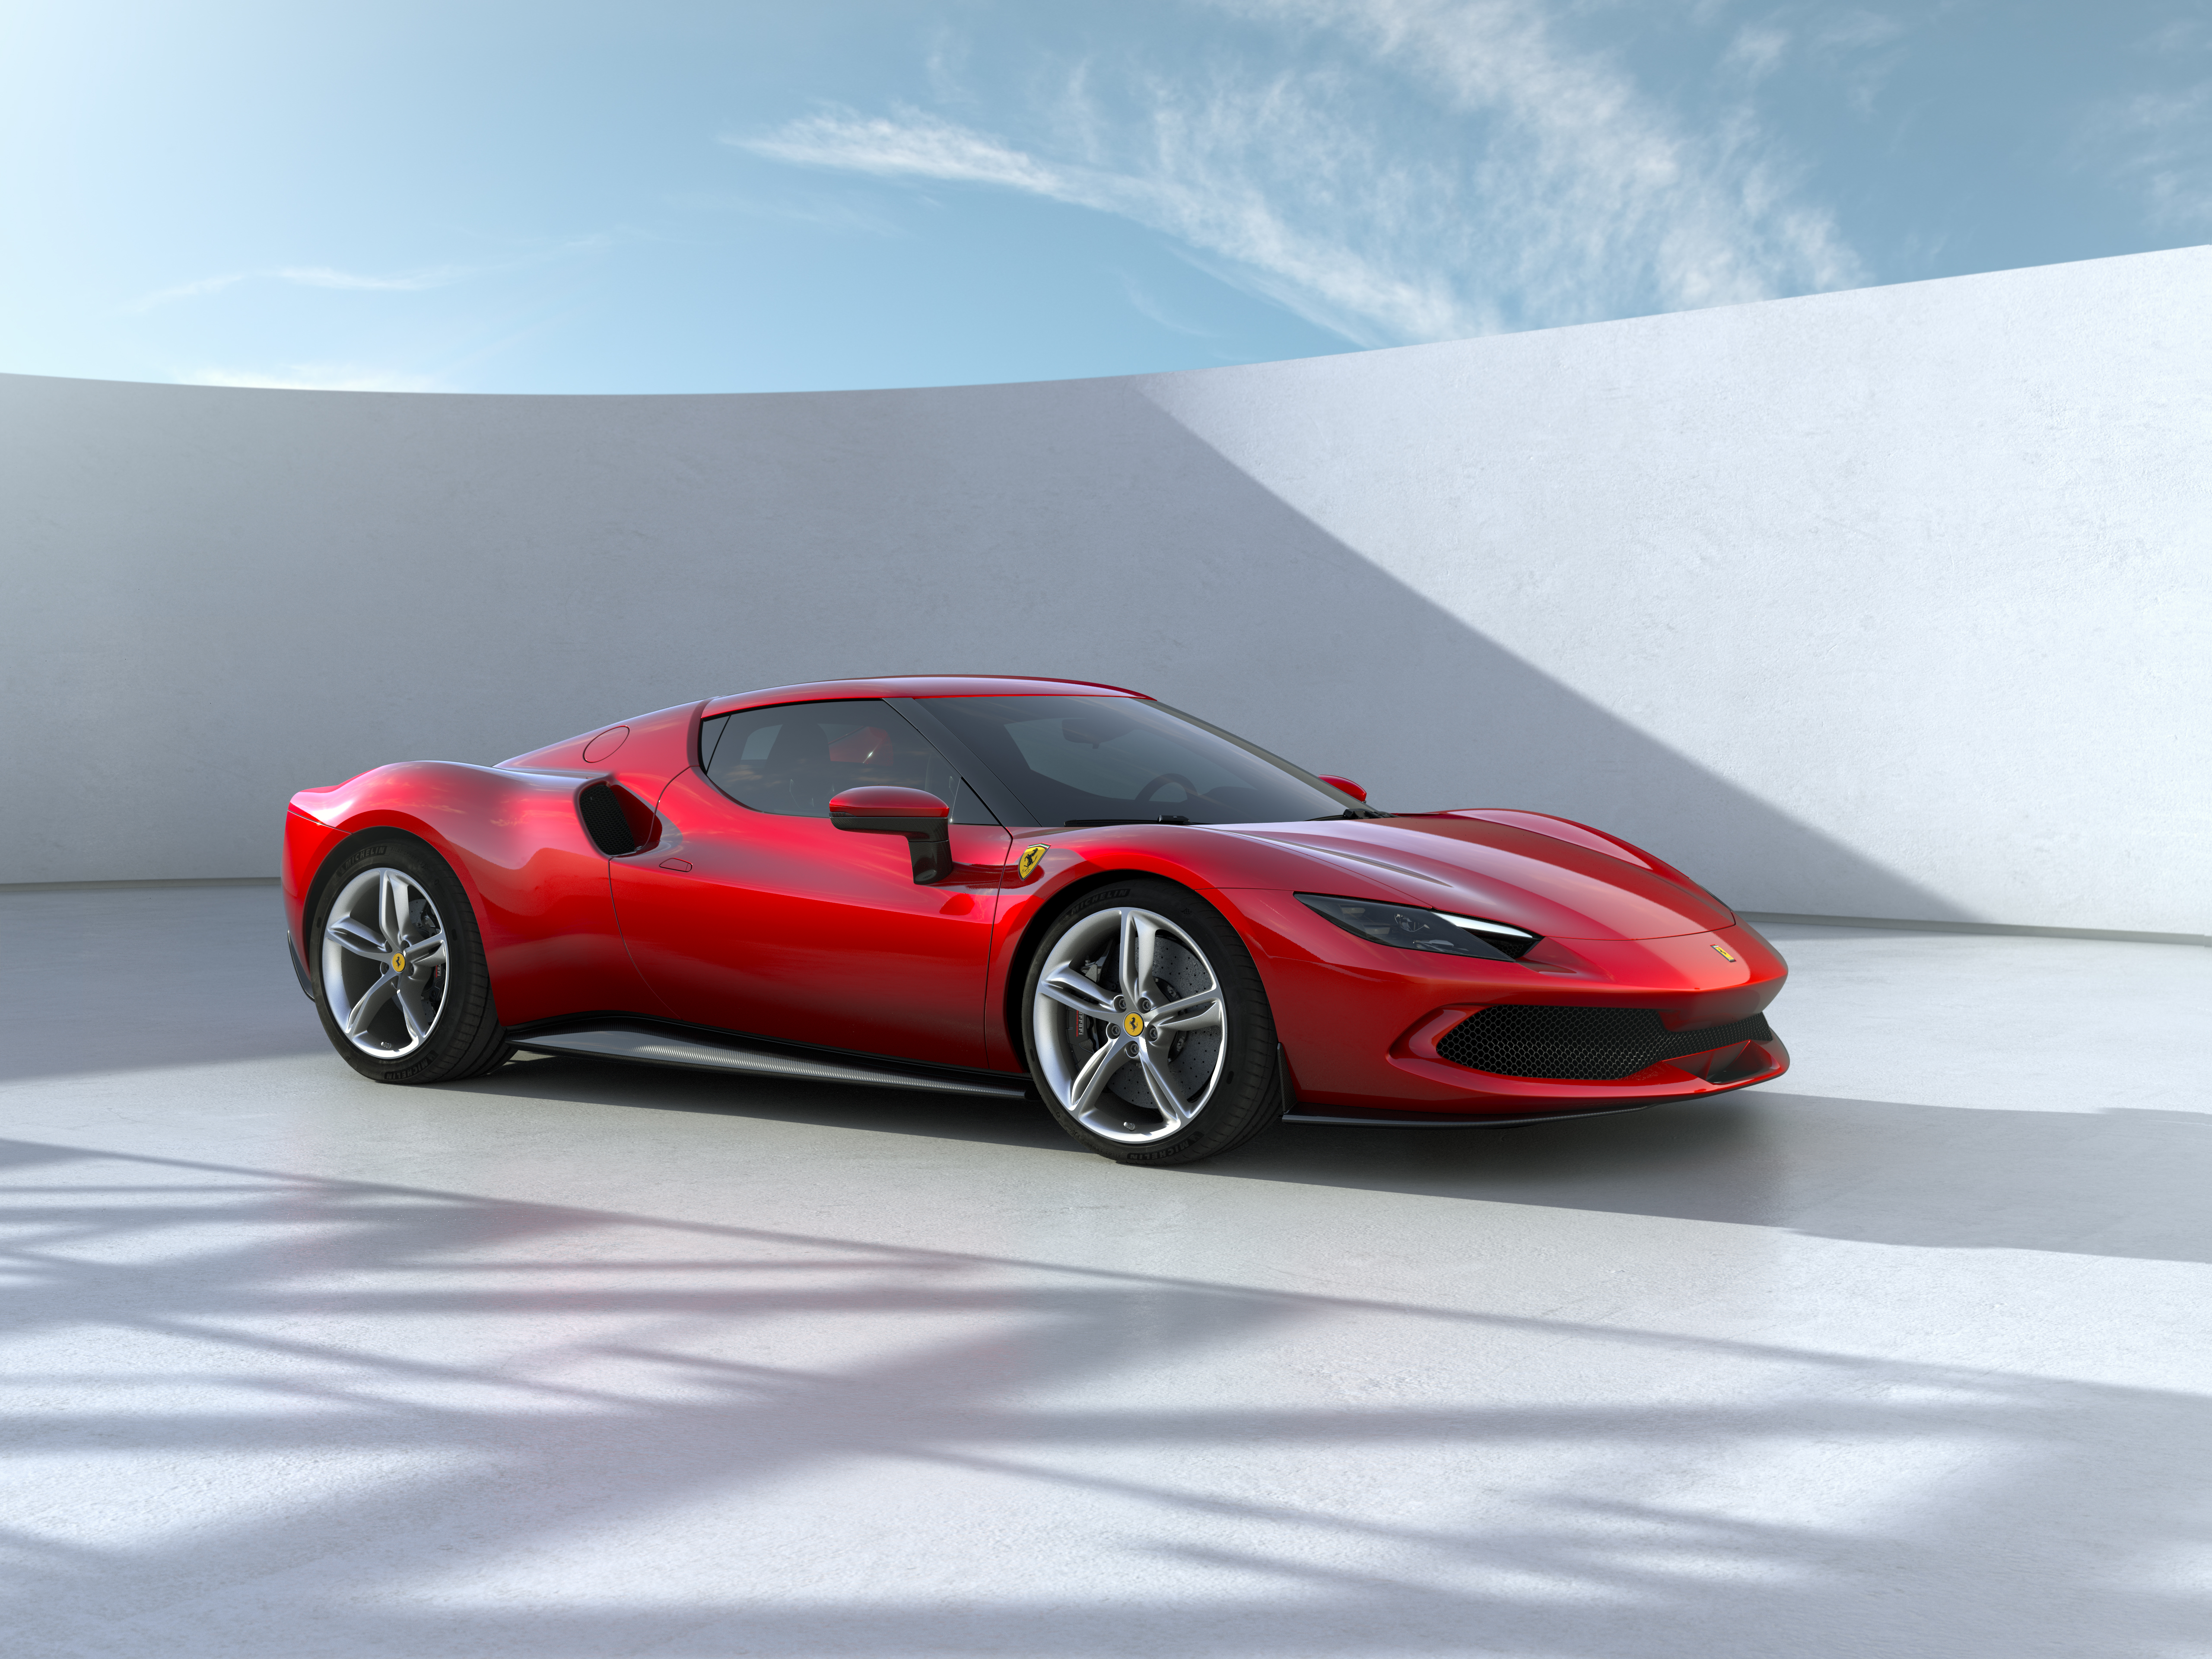 Ferrari SF90 Stradale hybride : prix, performances, autonomie,  commercialisation - Automobile Propre